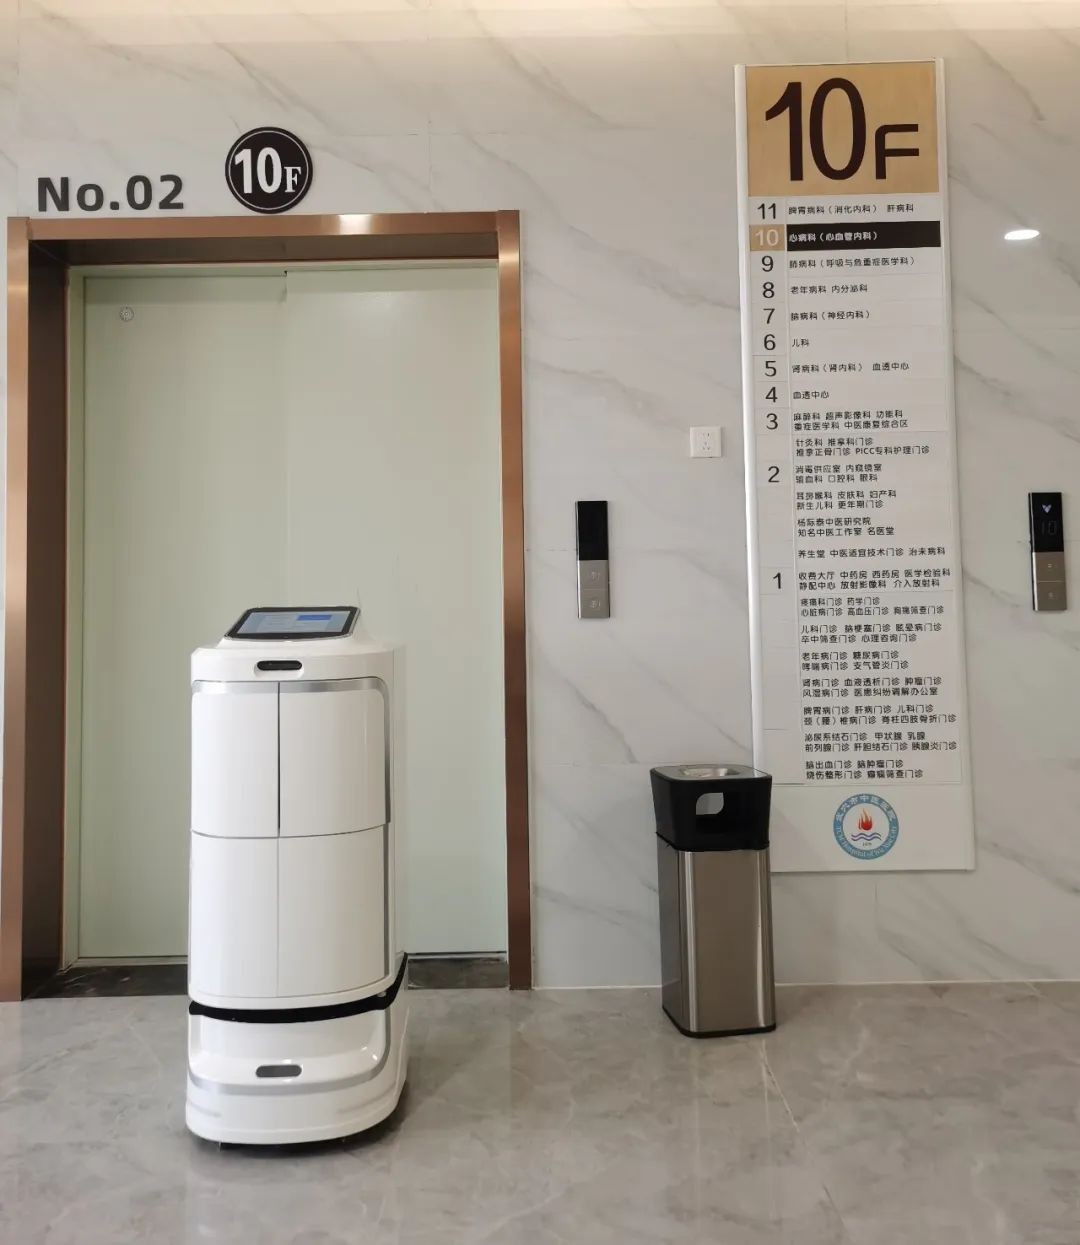 创新科技助力医疗：穿山甲机器人的三大系列机器人在“武穴市中医院”的应用...